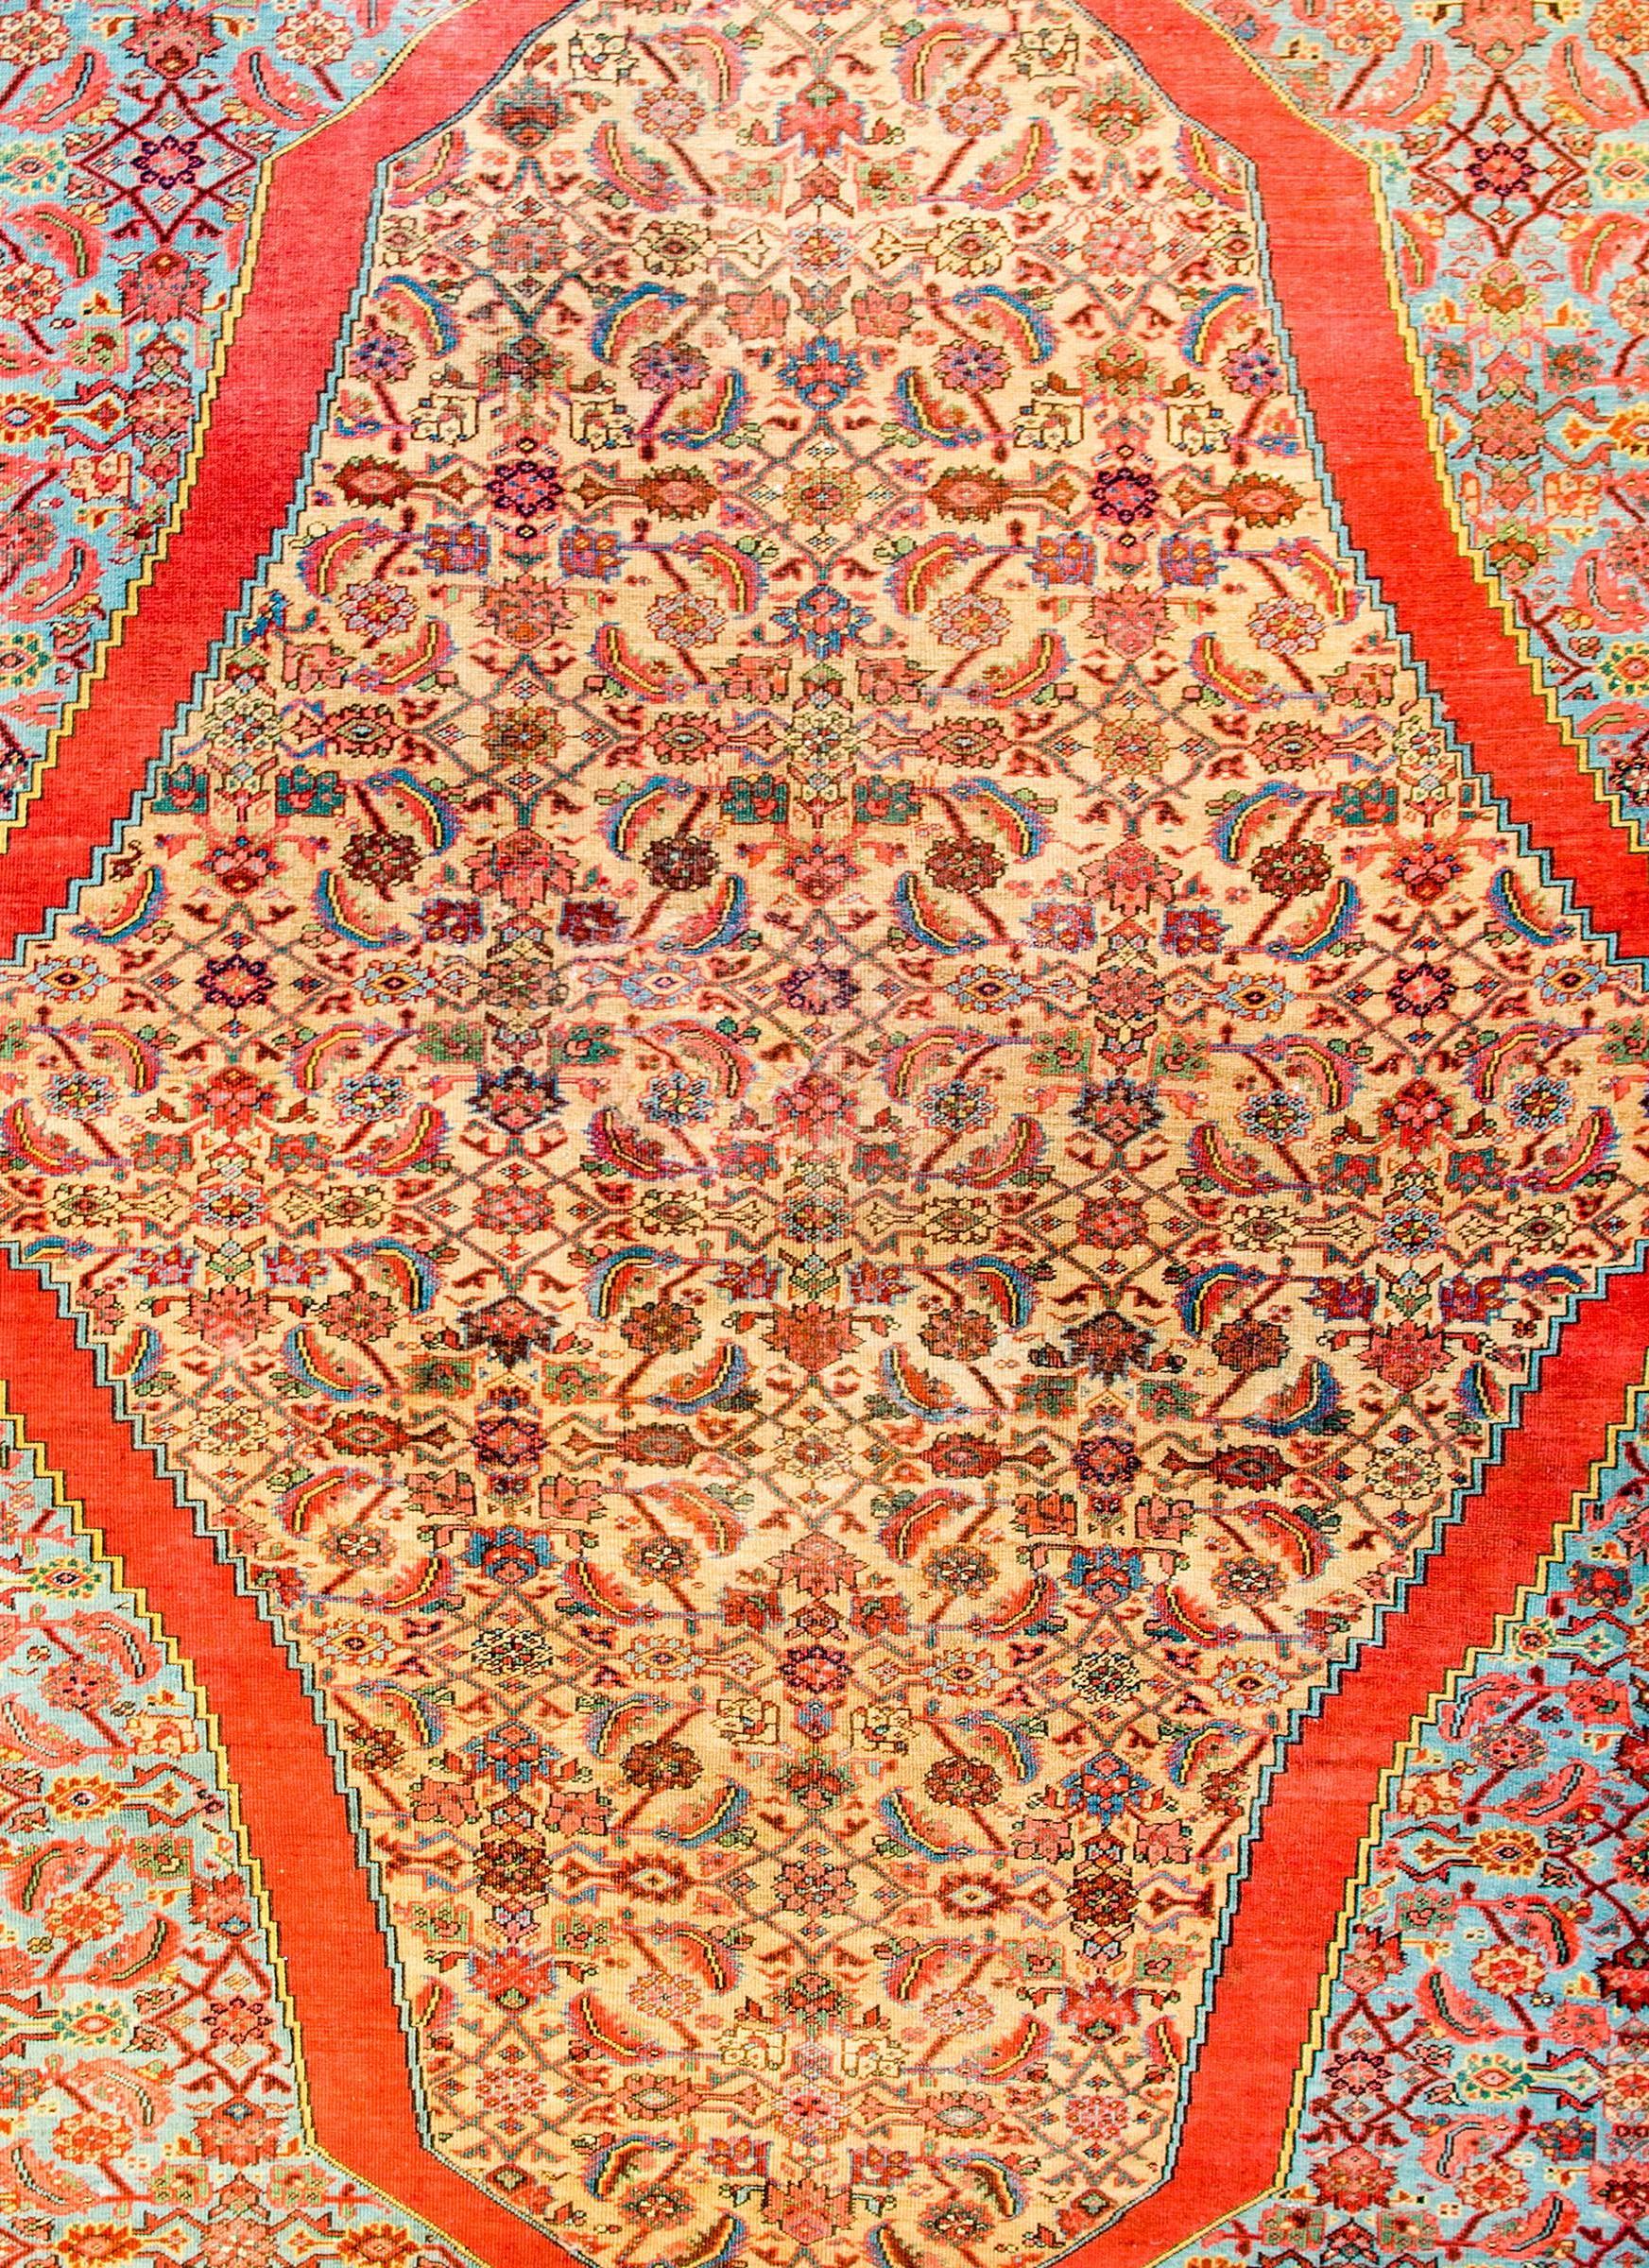 Ein unglaublicher persischer Bakschaisch-Teppich aus dem frühen 20. Jahrhundert mit einem unglaublichen All-Over-Spalier- und Blumenmuster in Karminrot, Rosa, Grün, Gold und dunklem Indigo auf einem natürlichen, ungefärbten Wollgrund. Das Spalier